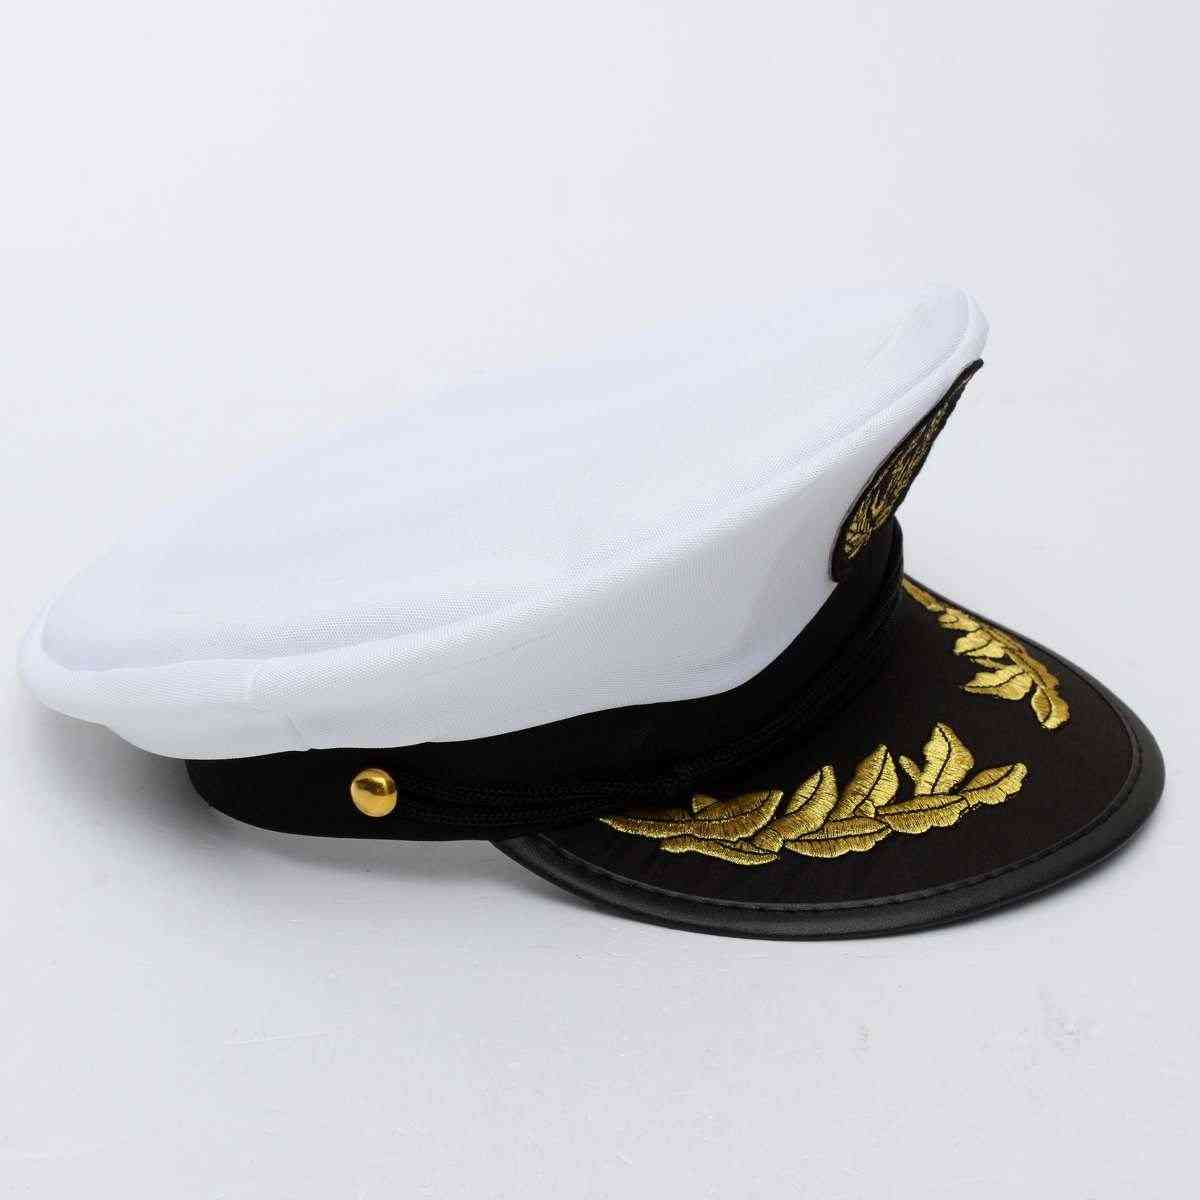 Captain Skipper Sailor Boat Hat, Costume Navy Ship Party Fancy Cap